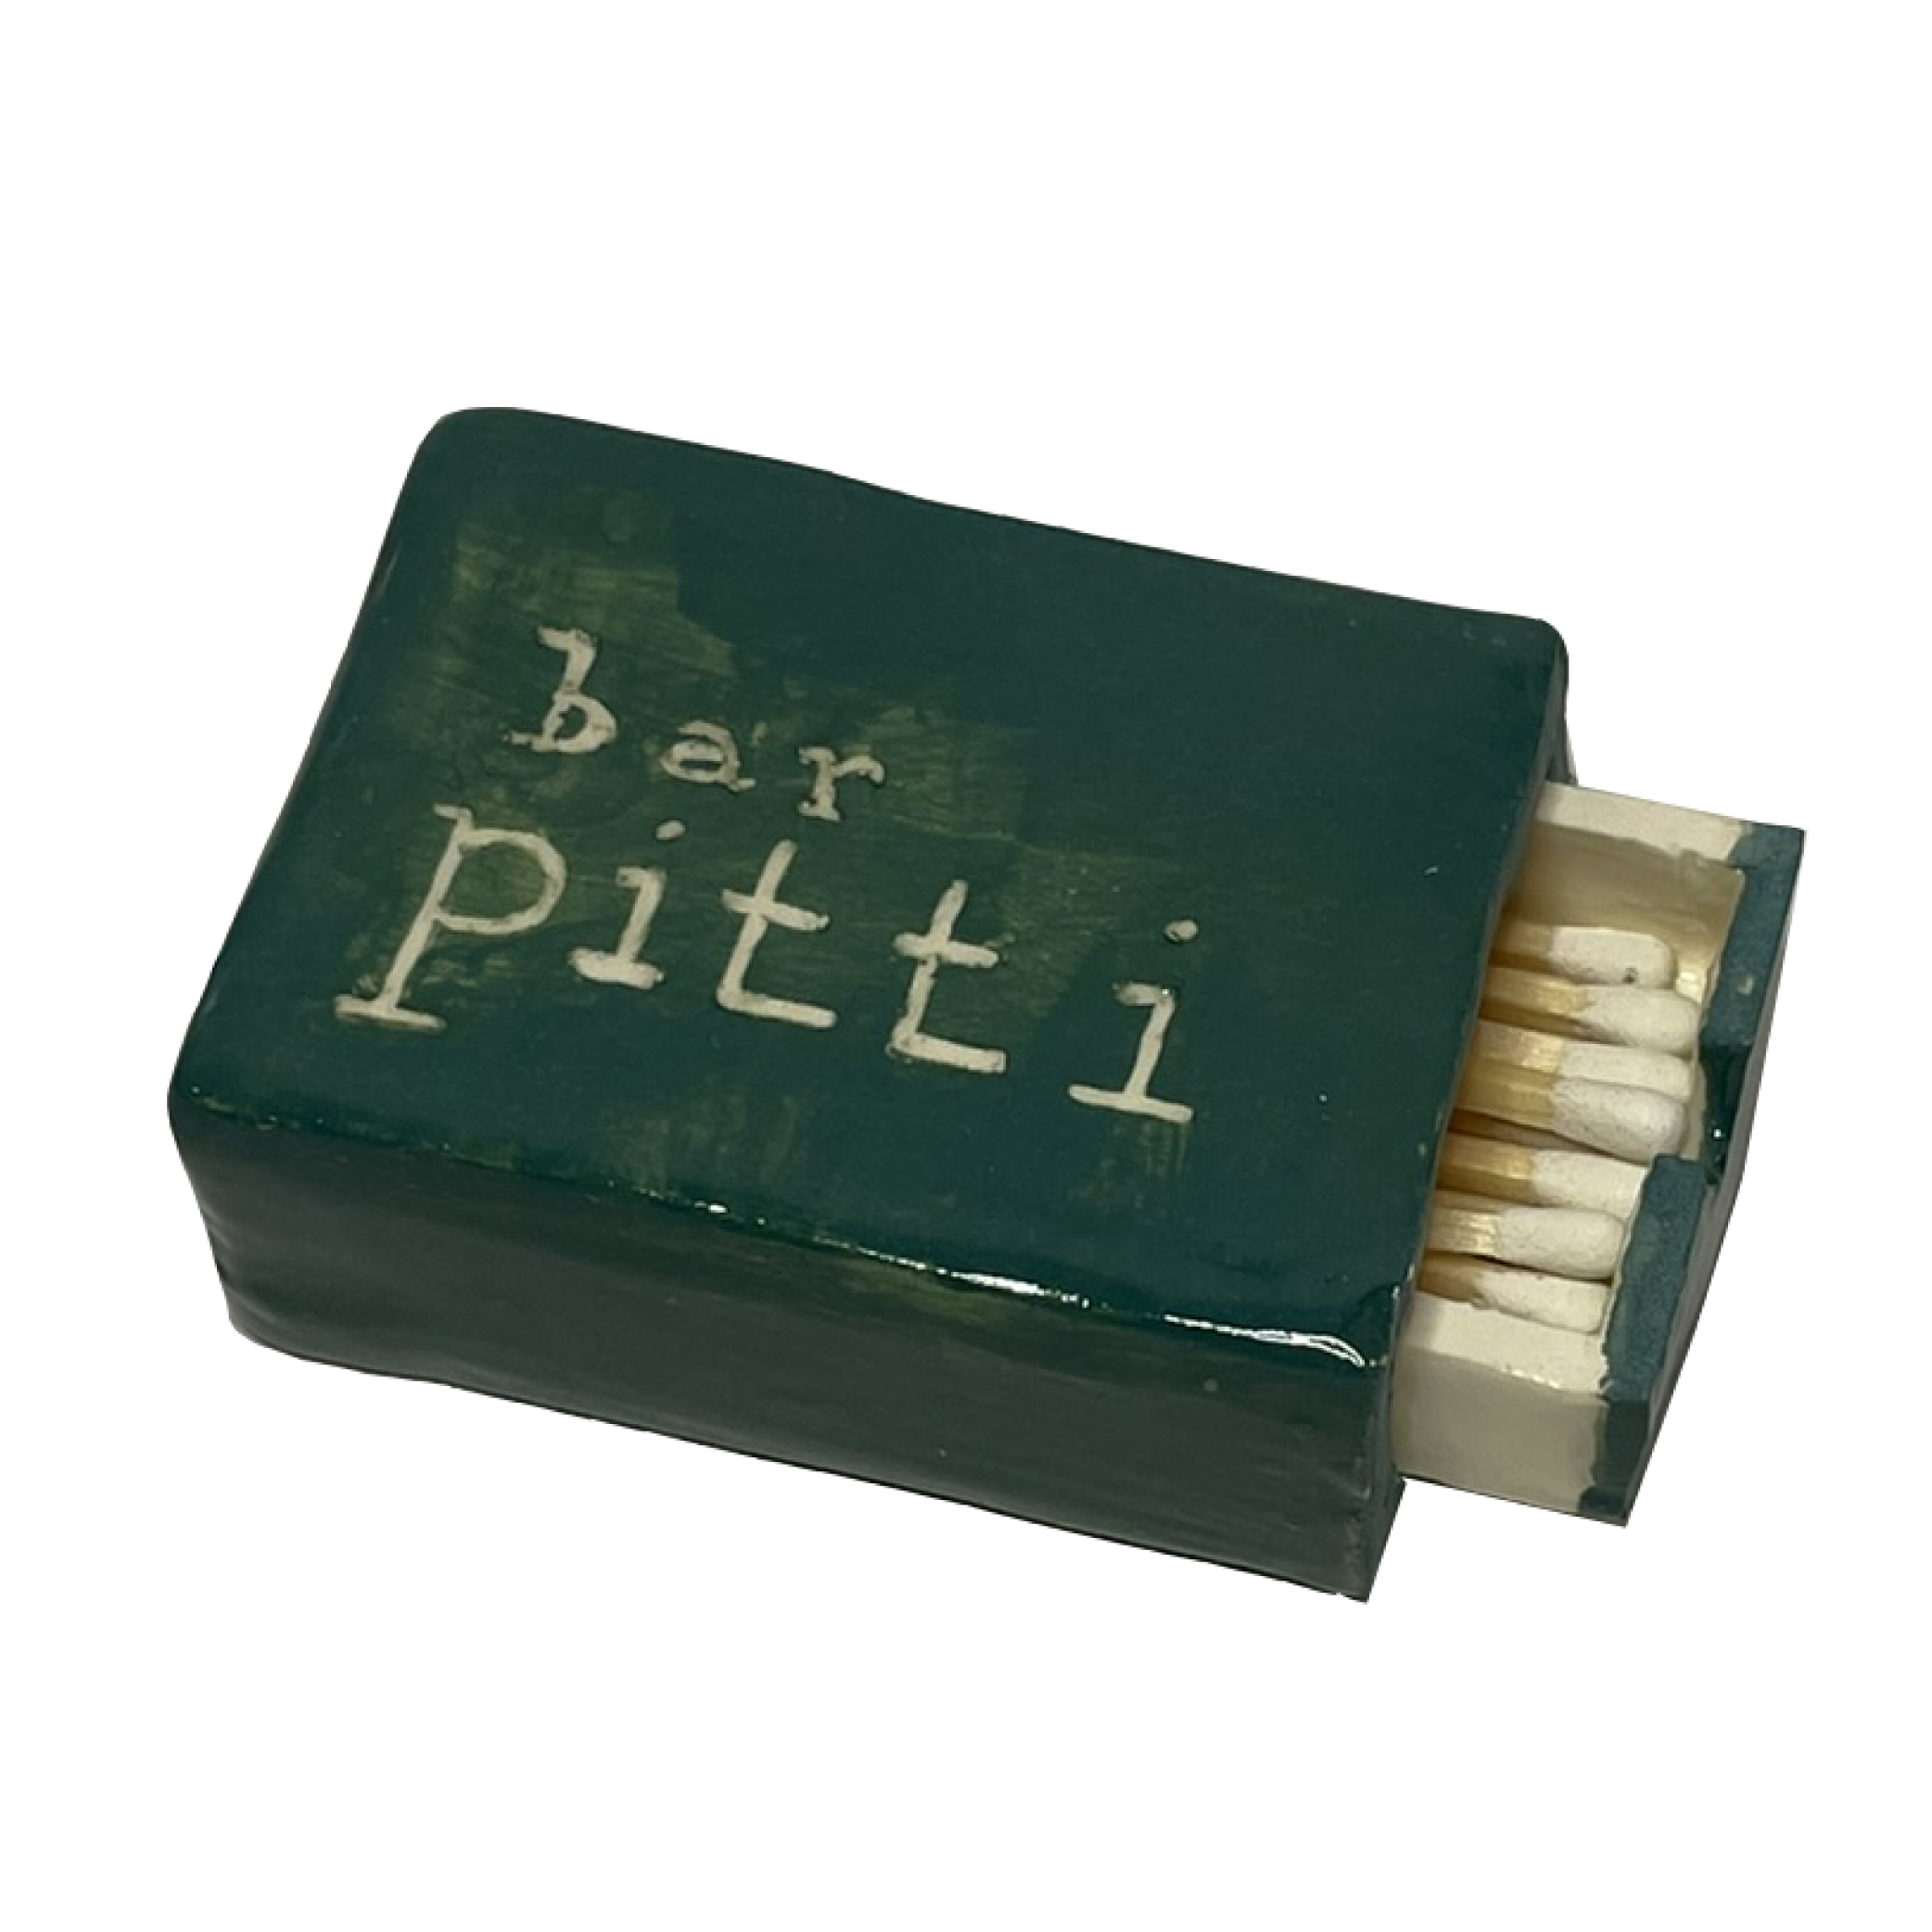 Bar Pitti Matchbox - small product photo